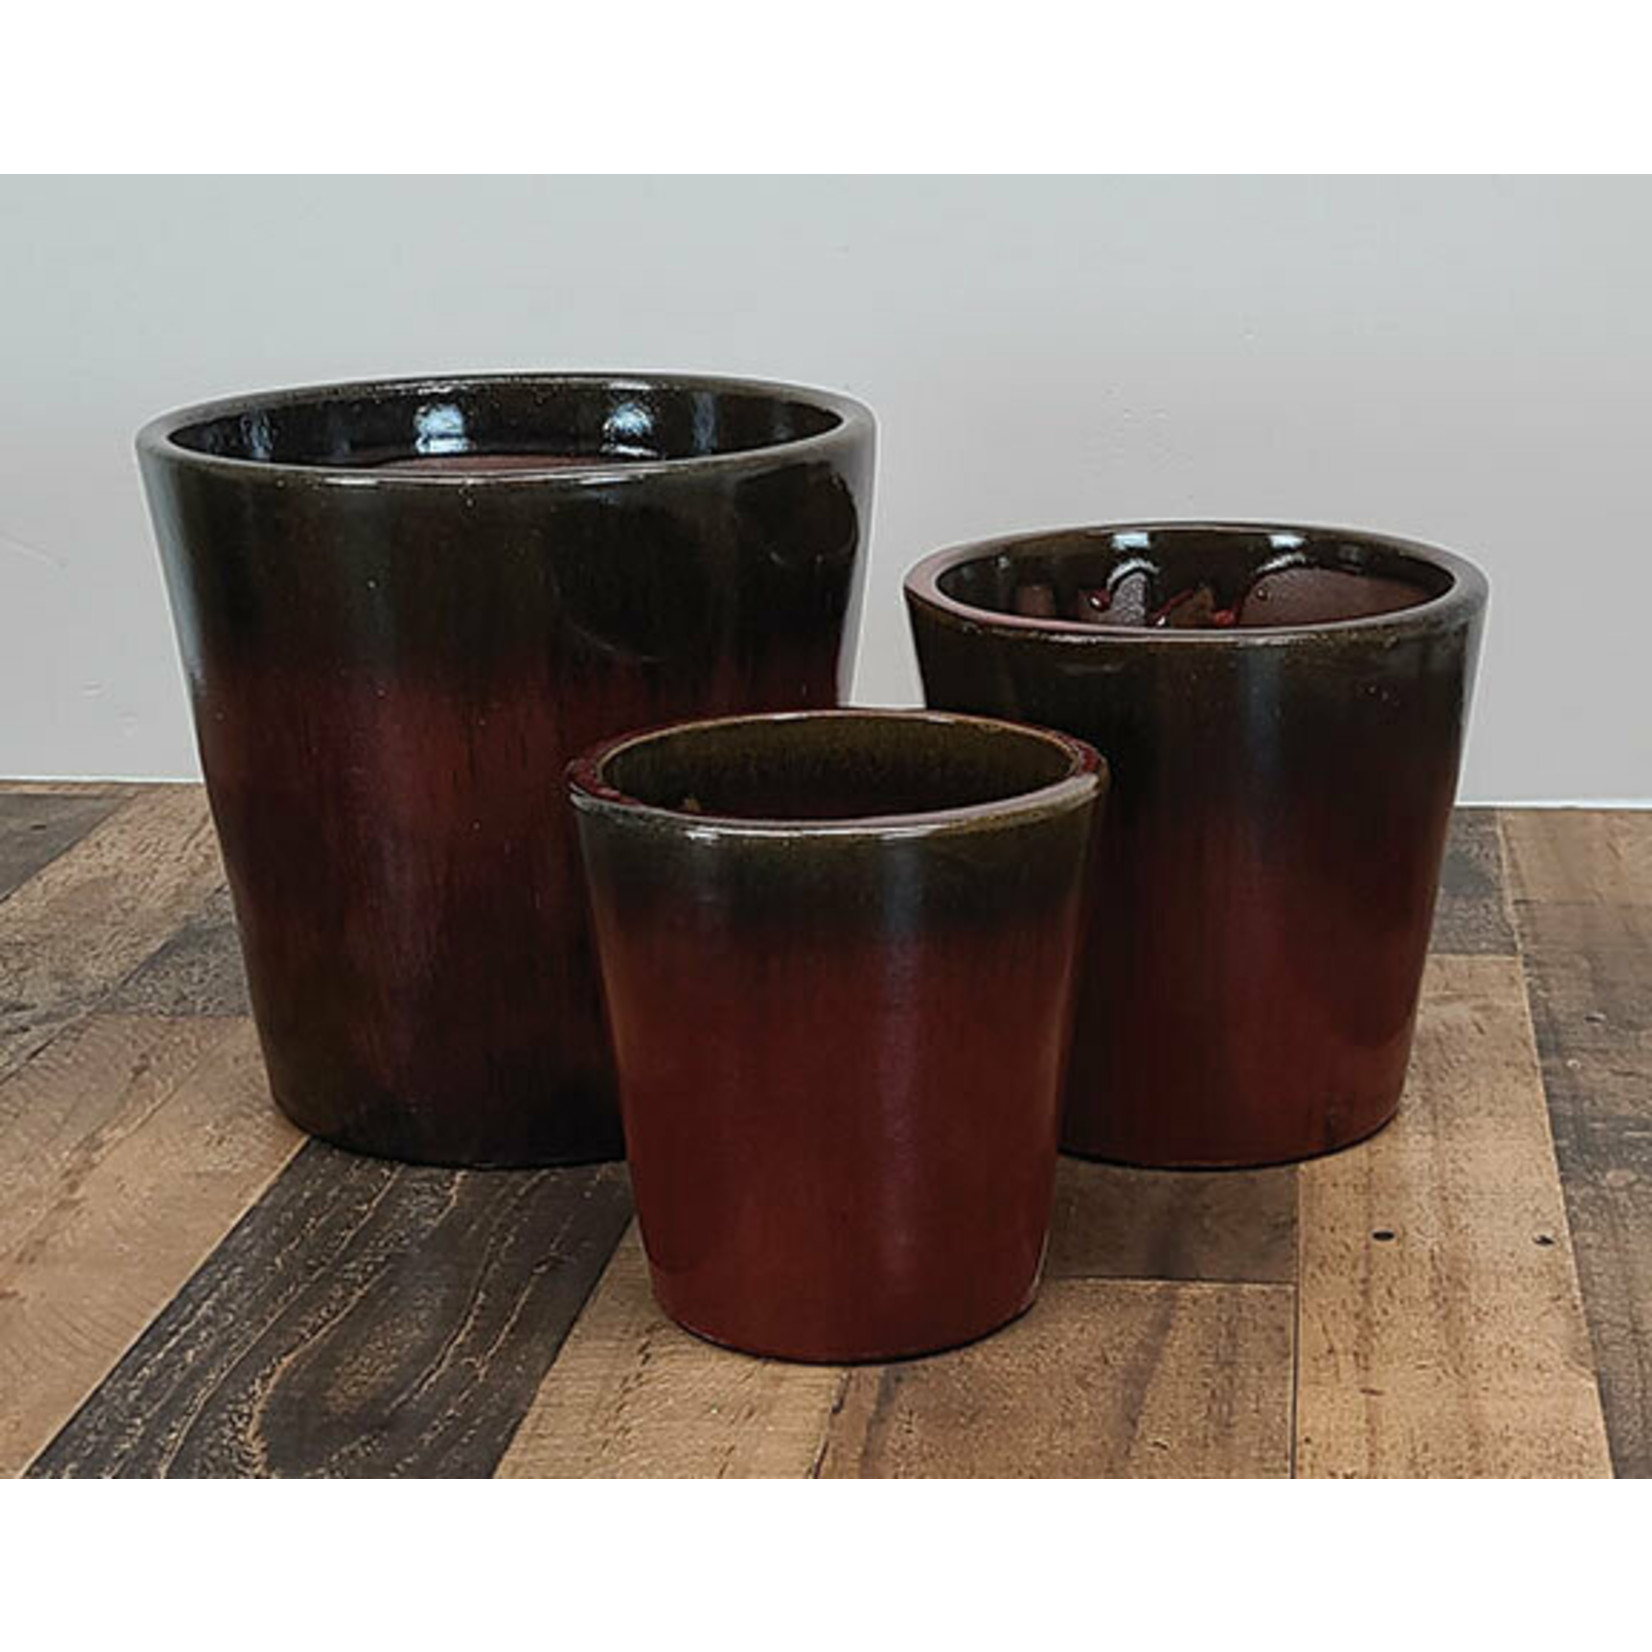 Ceramic tapered pots